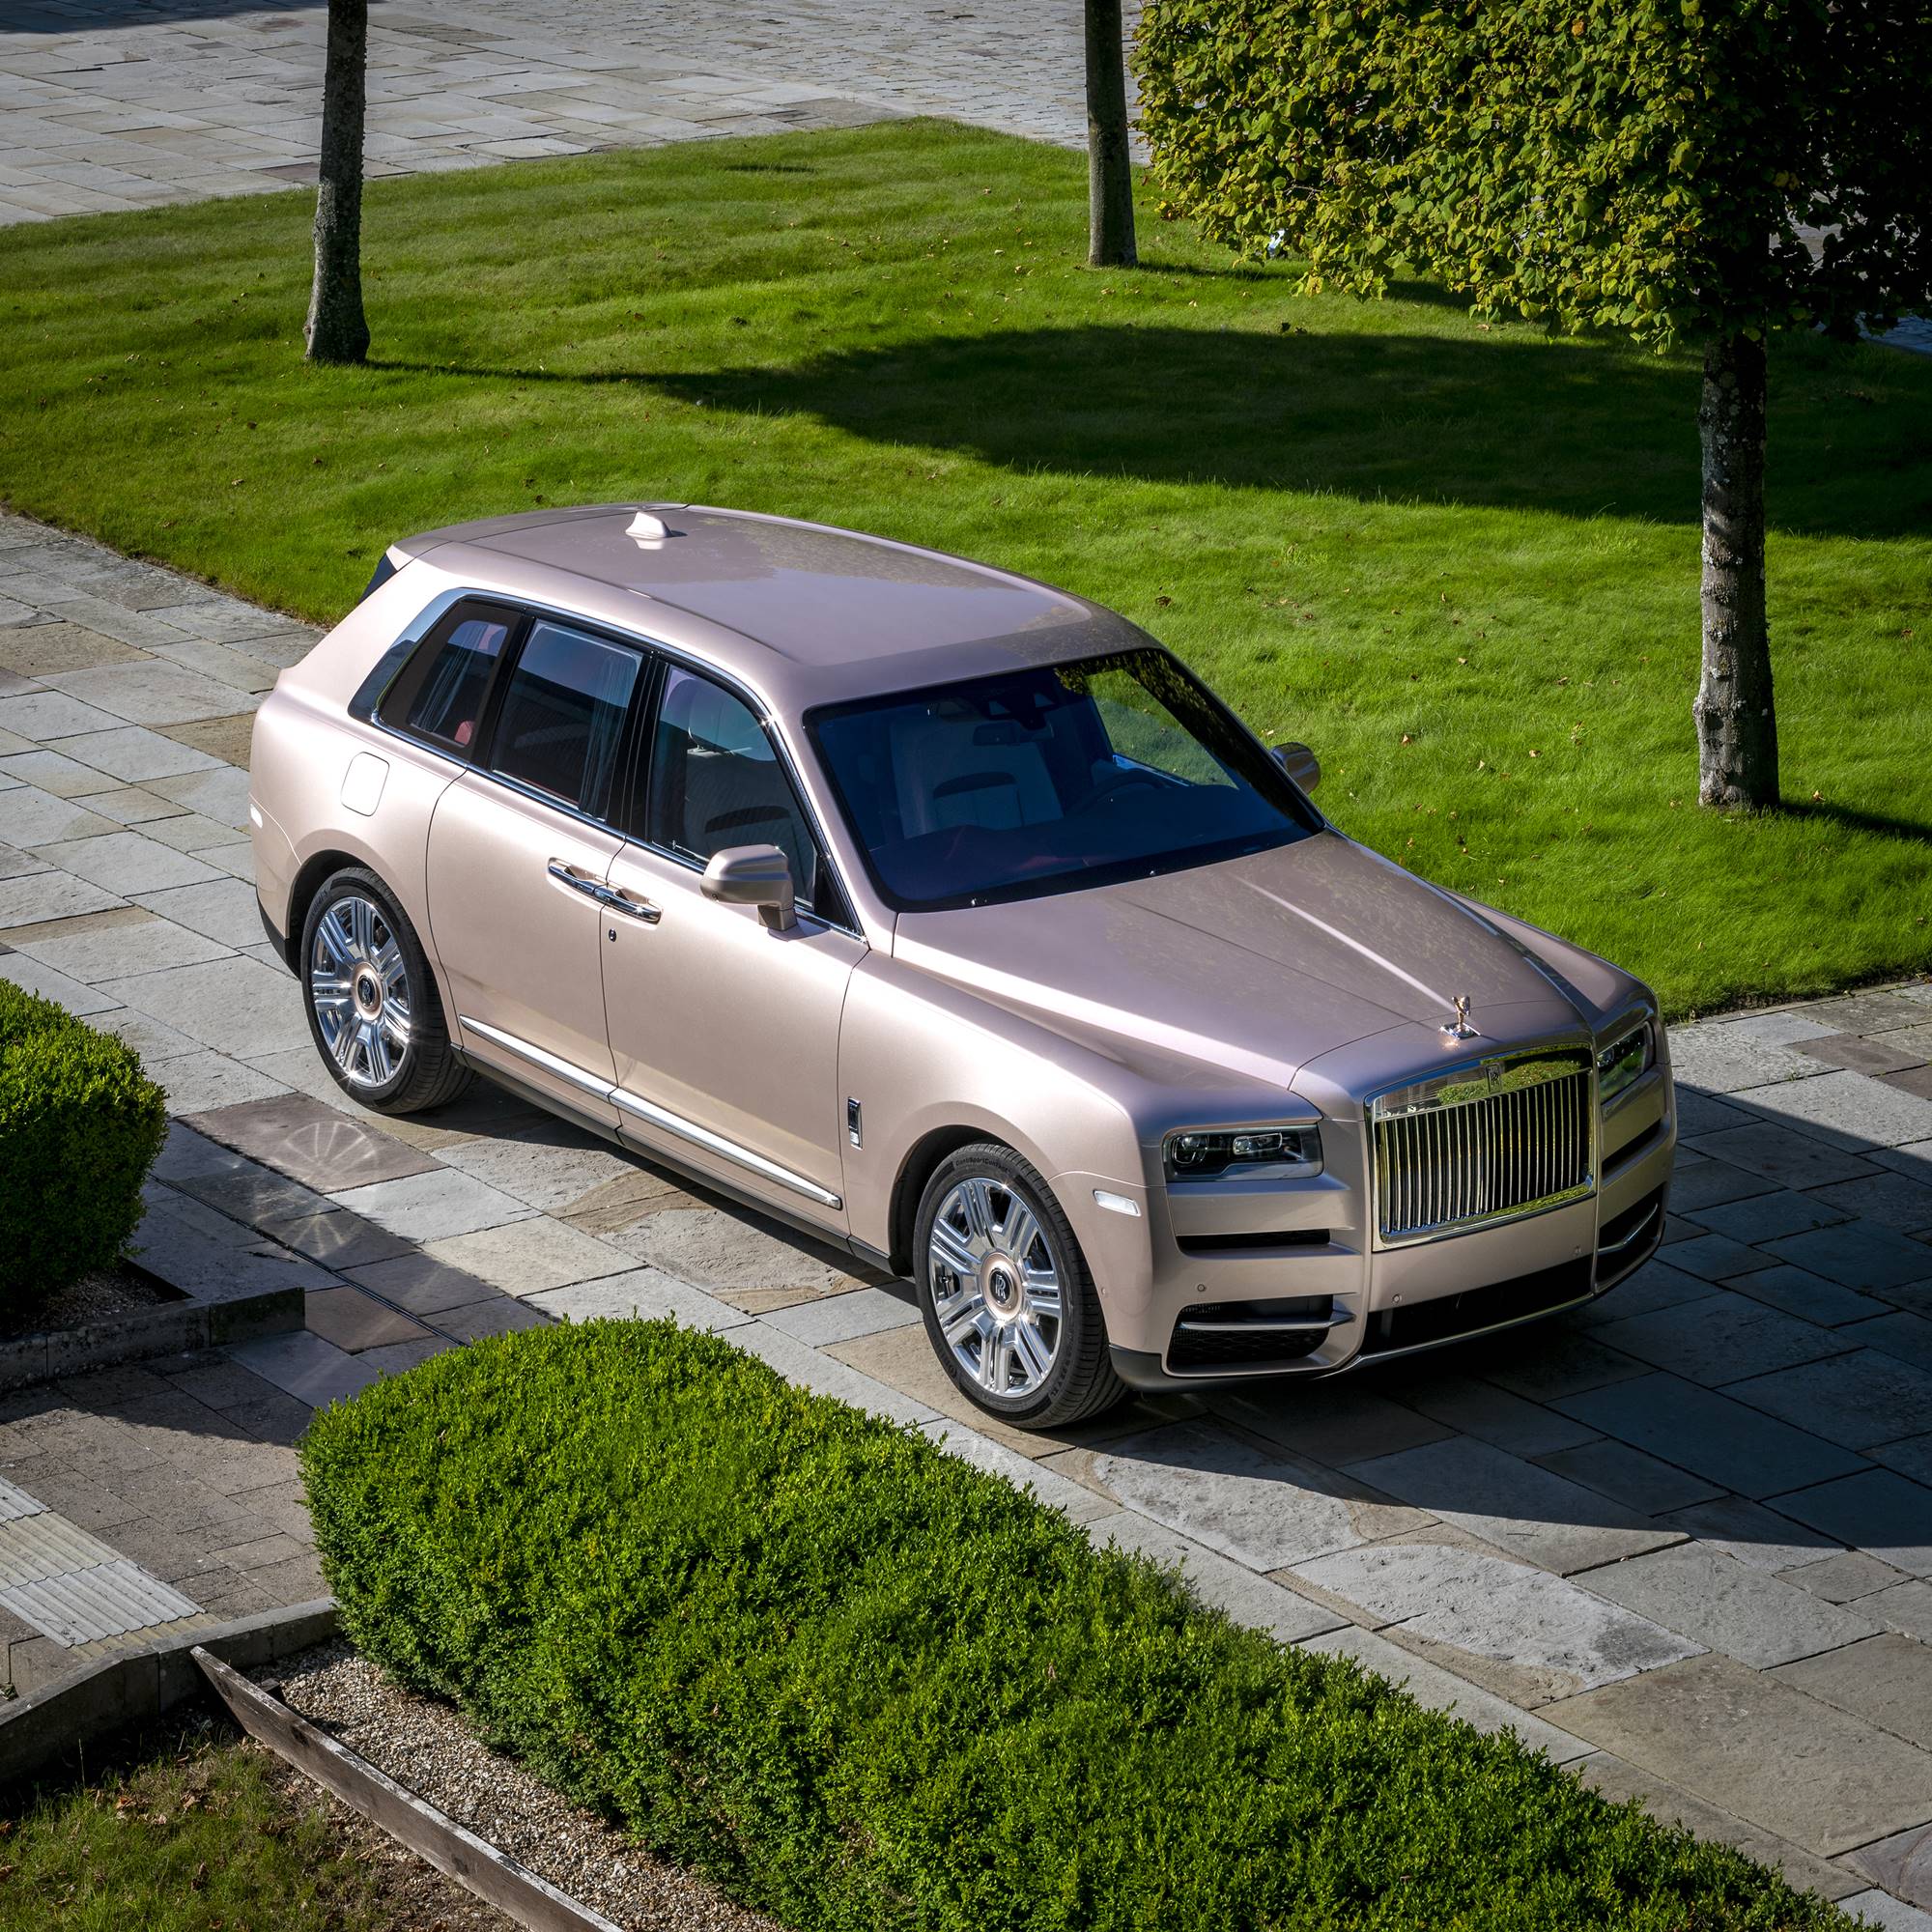 The Pearl Cullinan by Rolls-Royce Bespoke [2023]